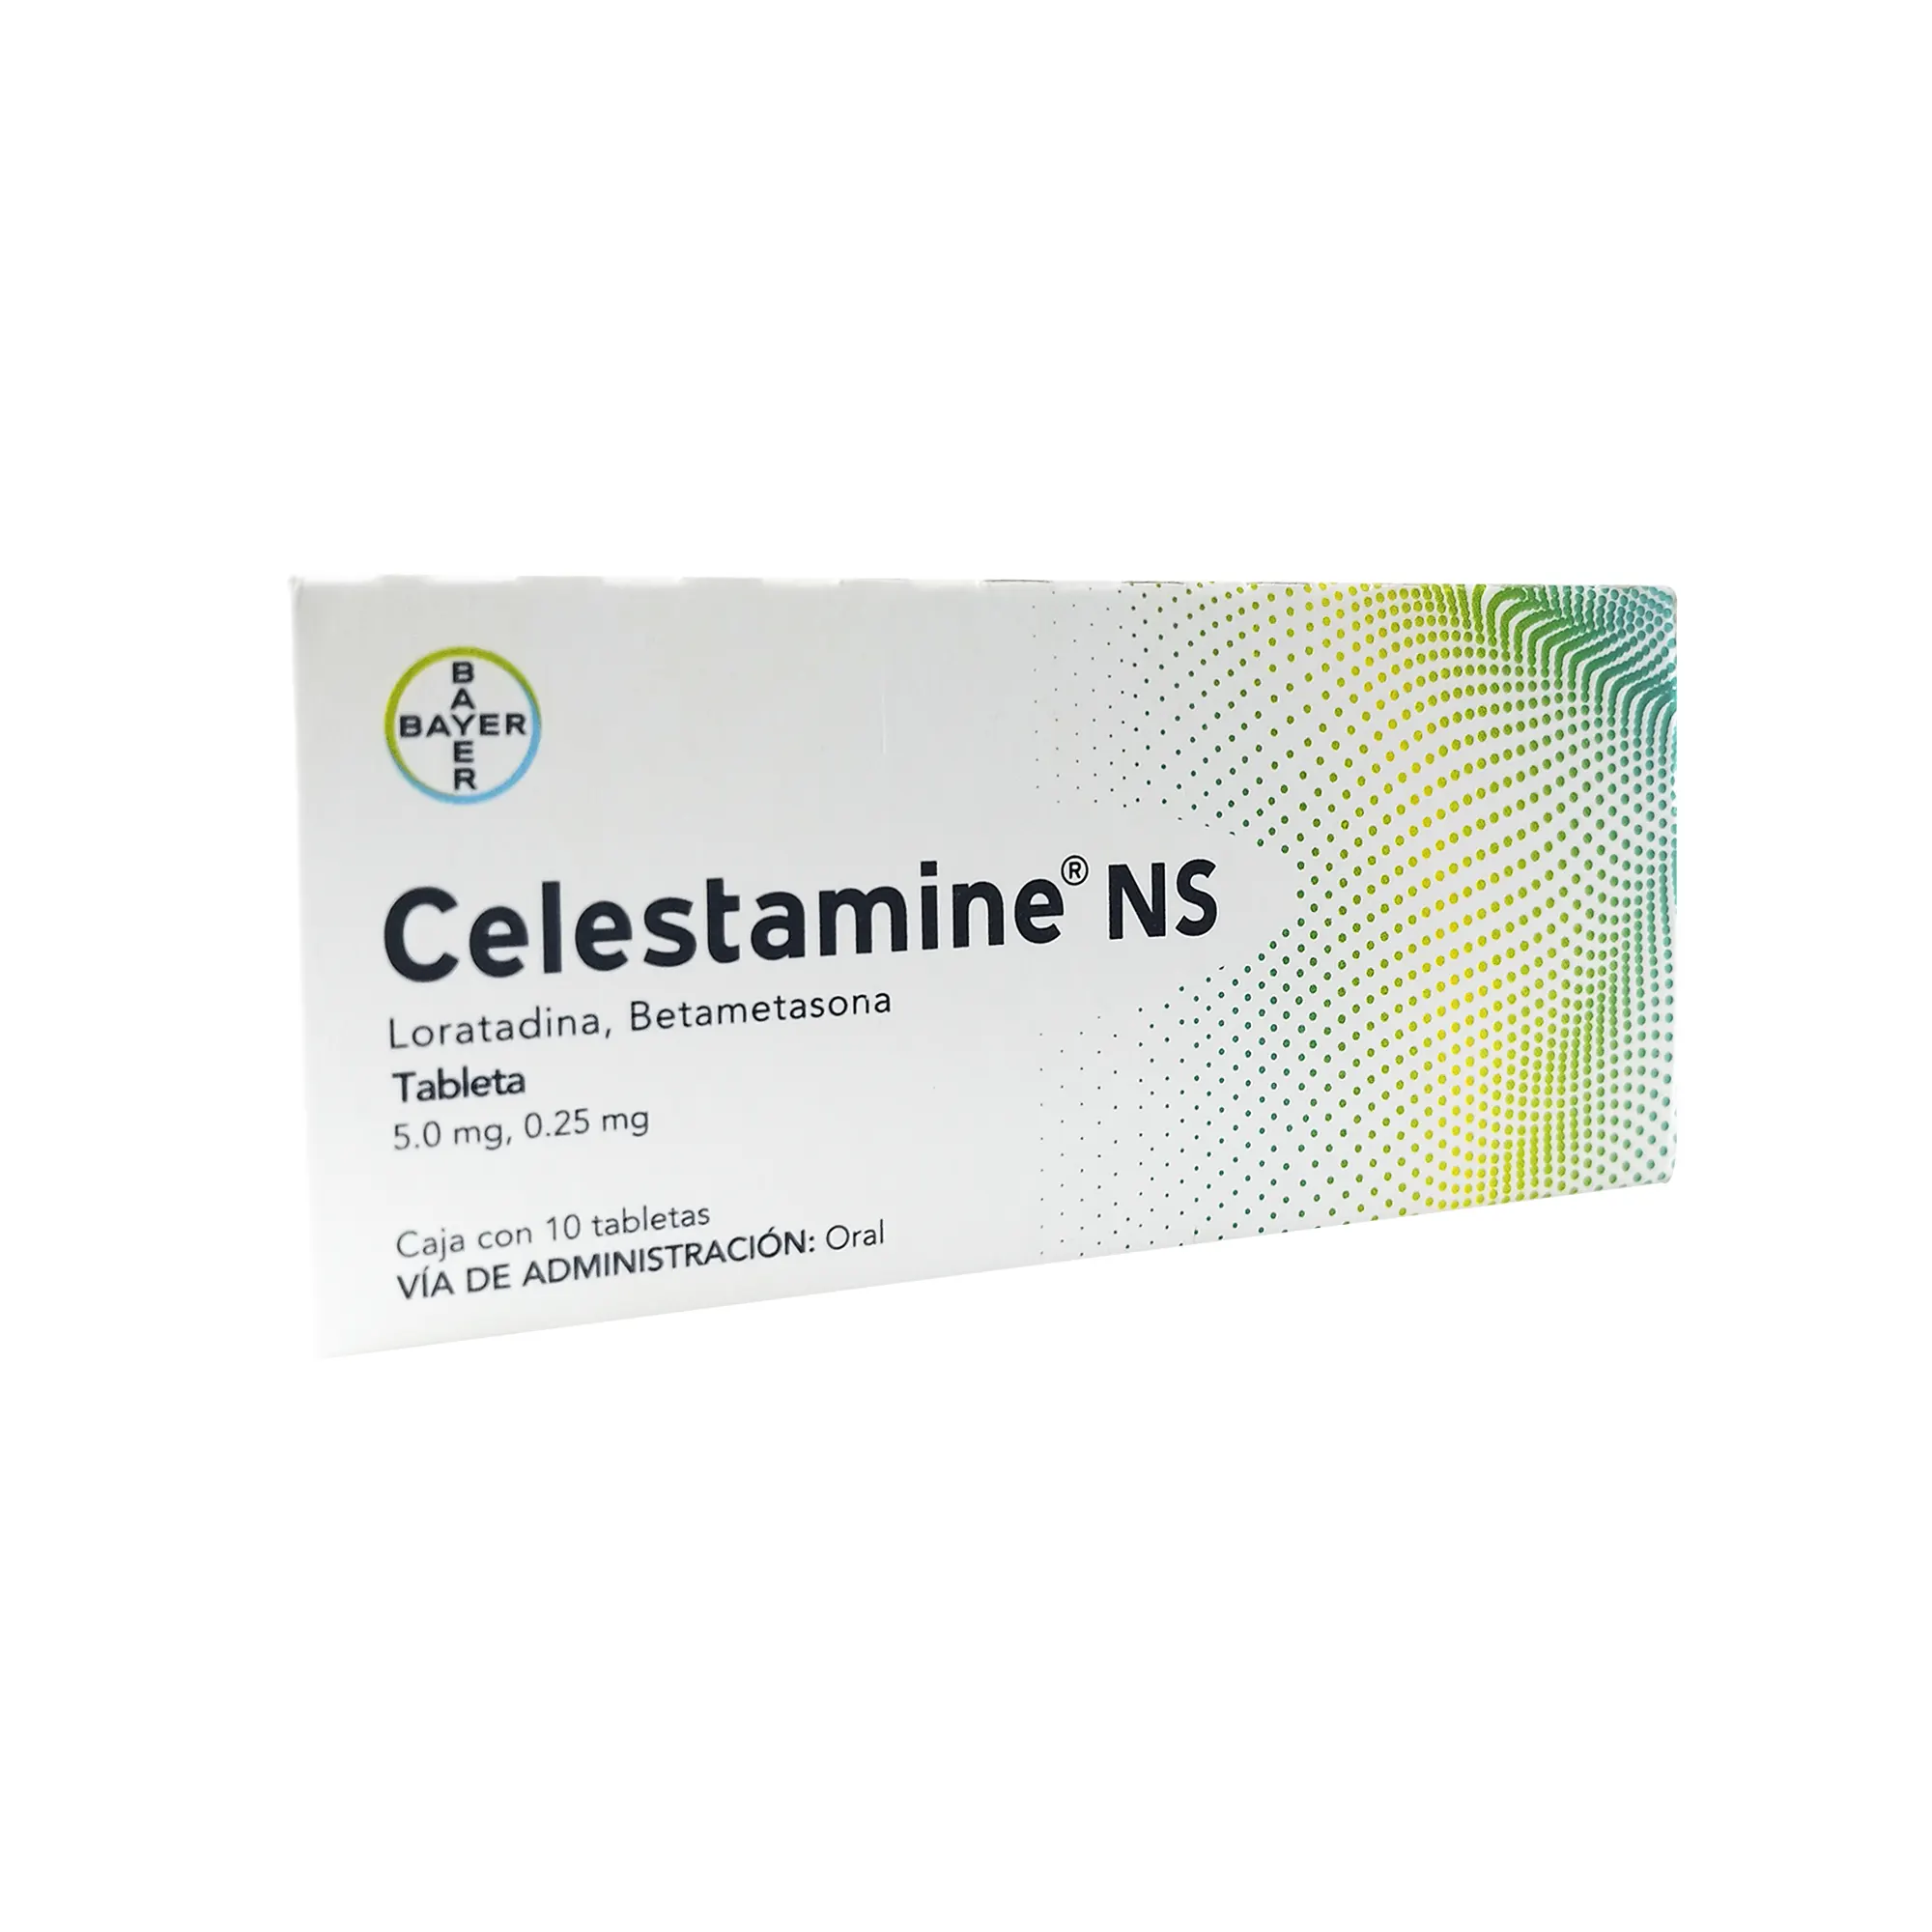 7501050610018 1 celestamine ns loratadina - betametasona 5.0/0.25 mg tableta 10 tableta(s)